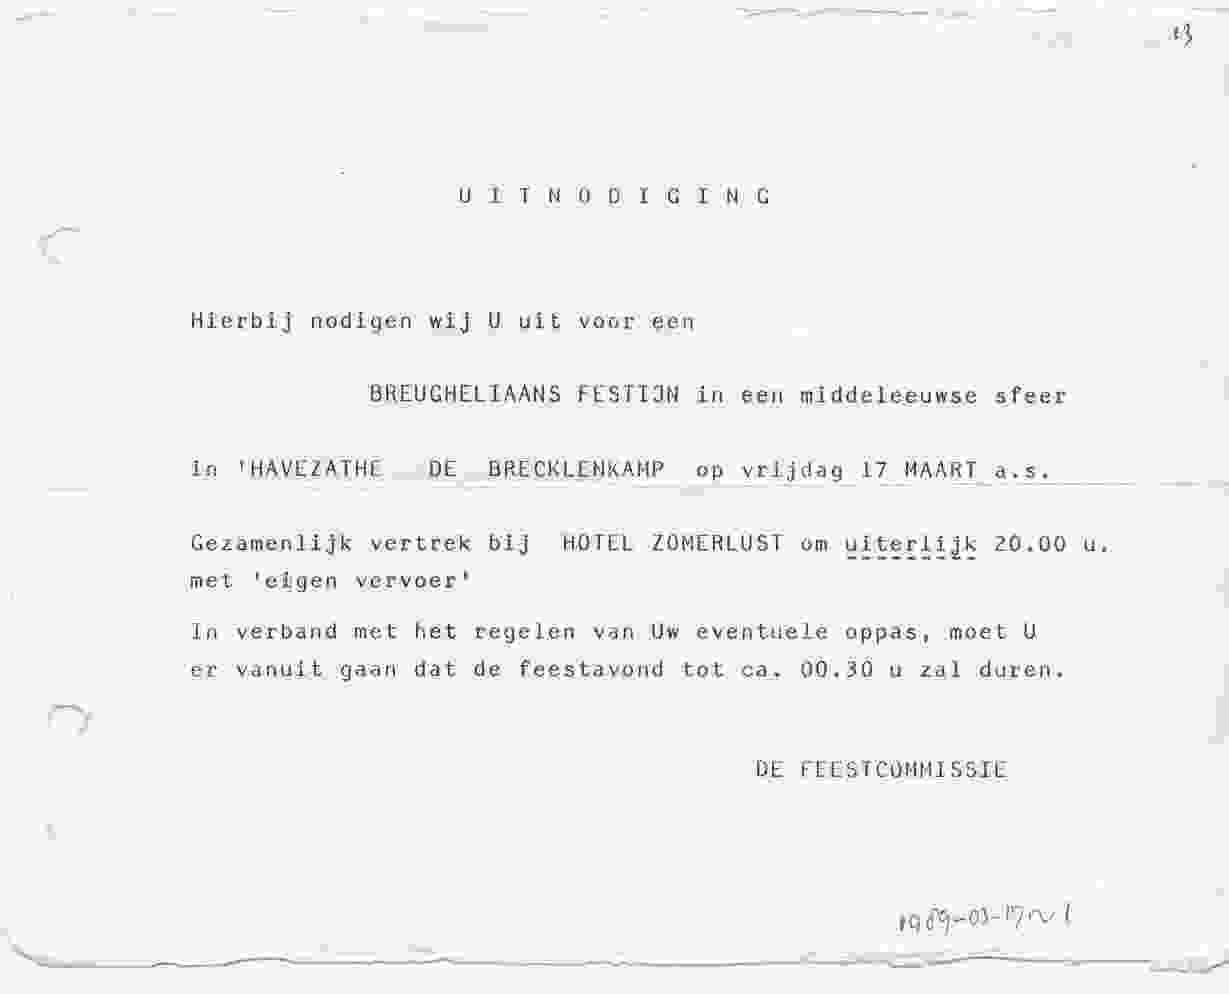 Uitnodiging Breugheliaans feest in Lattrop op 1989-03-17